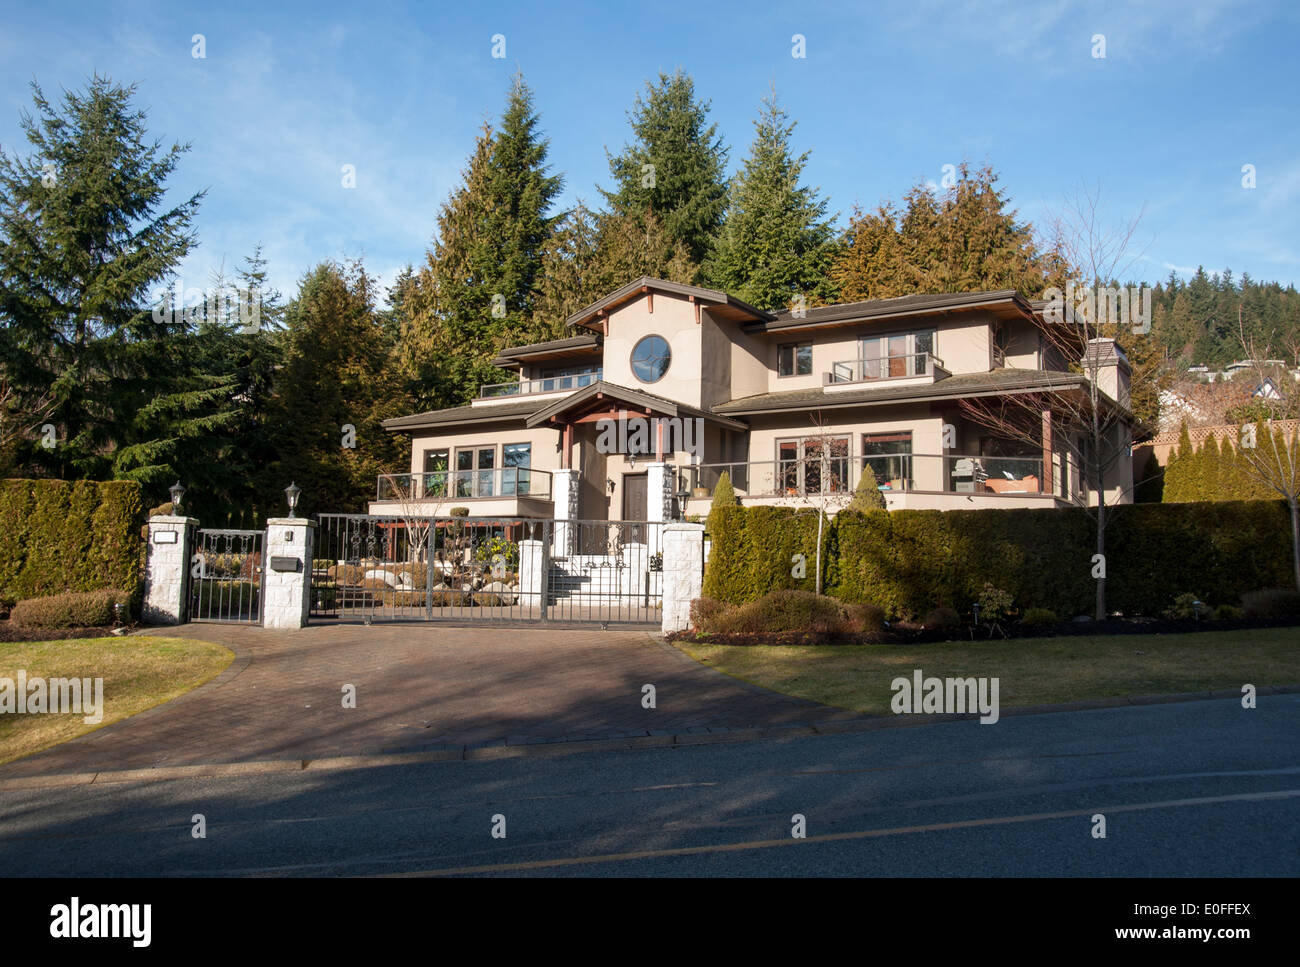 Accueil de la grandes propriétés, West Vancouver, British Columbia, Canada Banque D'Images